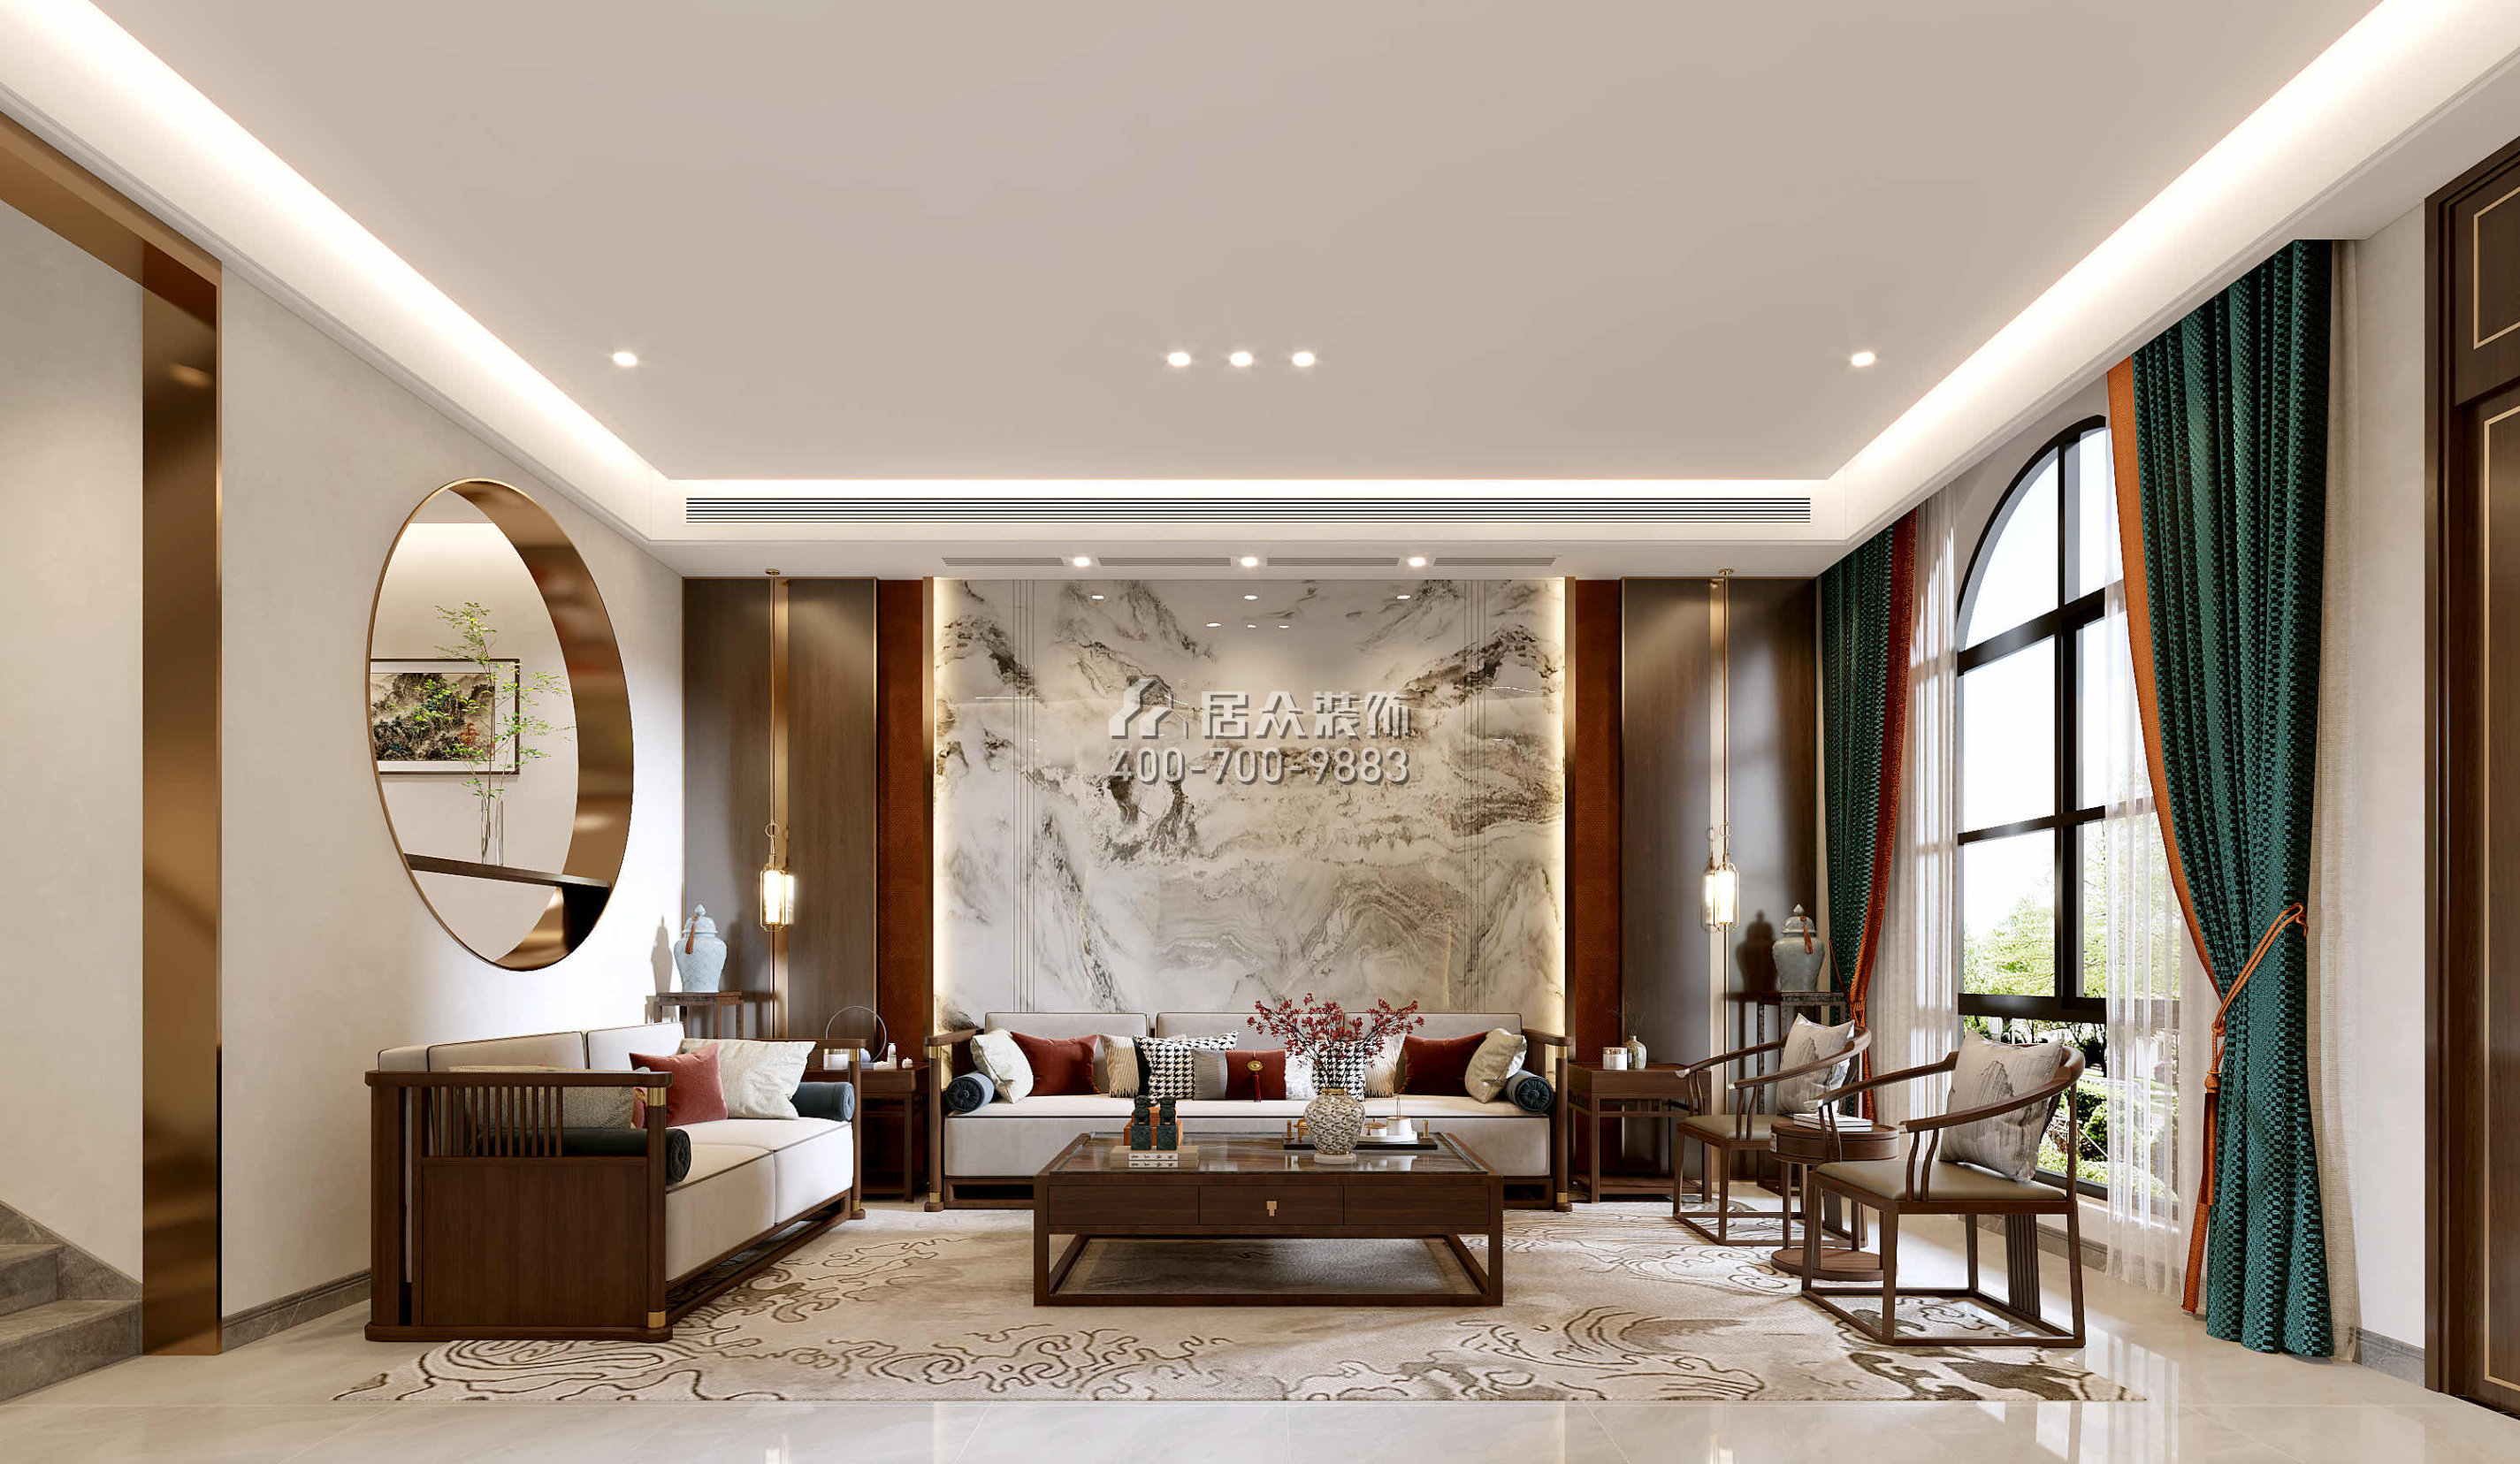 觀嶺高爾夫豪庭430平方米中式風格別墅戶型客廳裝修效果圖